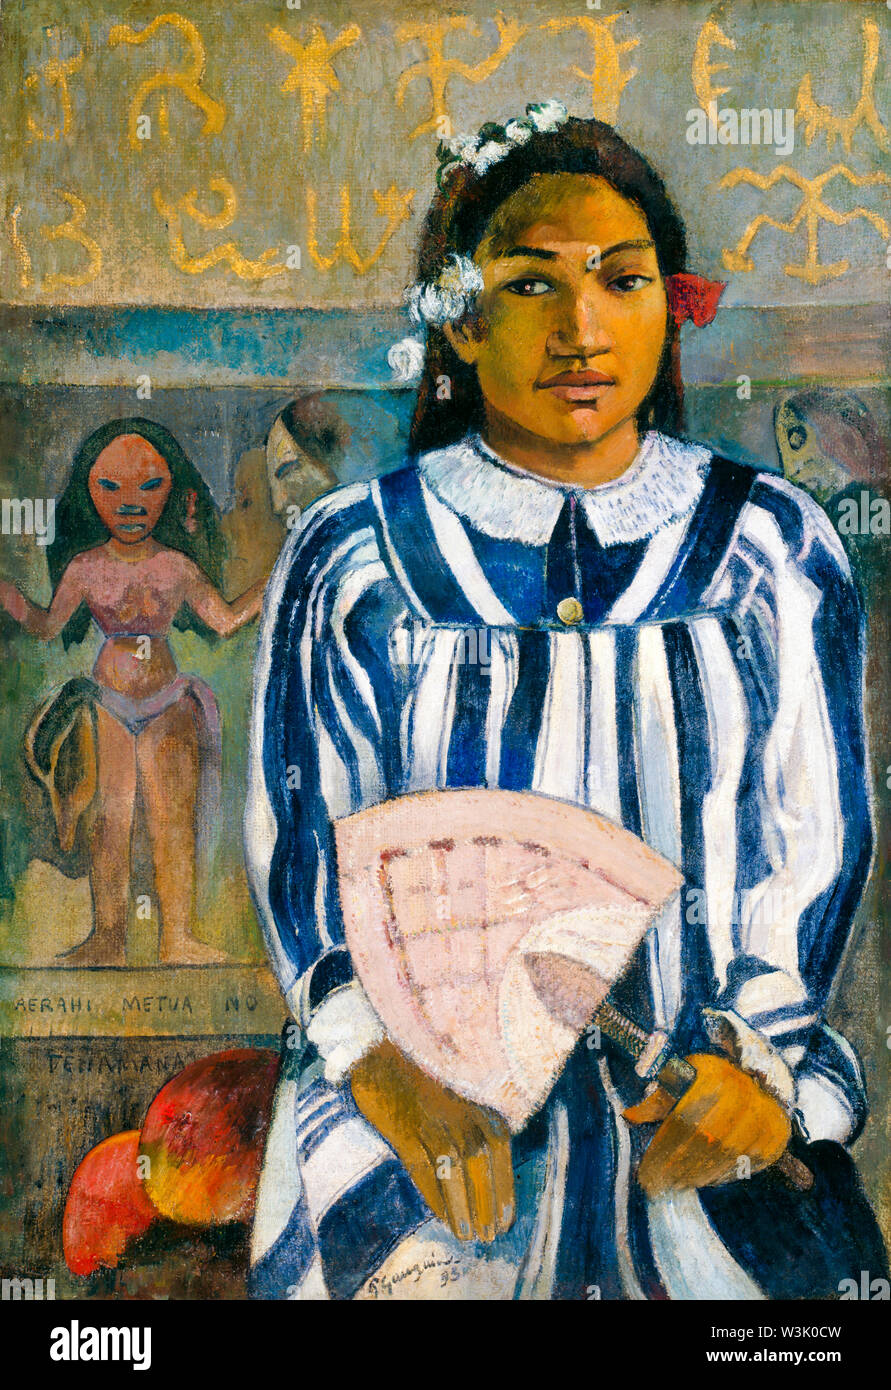 Paul Gauguin, les ancêtres des Tehamana, portrait, 1893 Banque D'Images